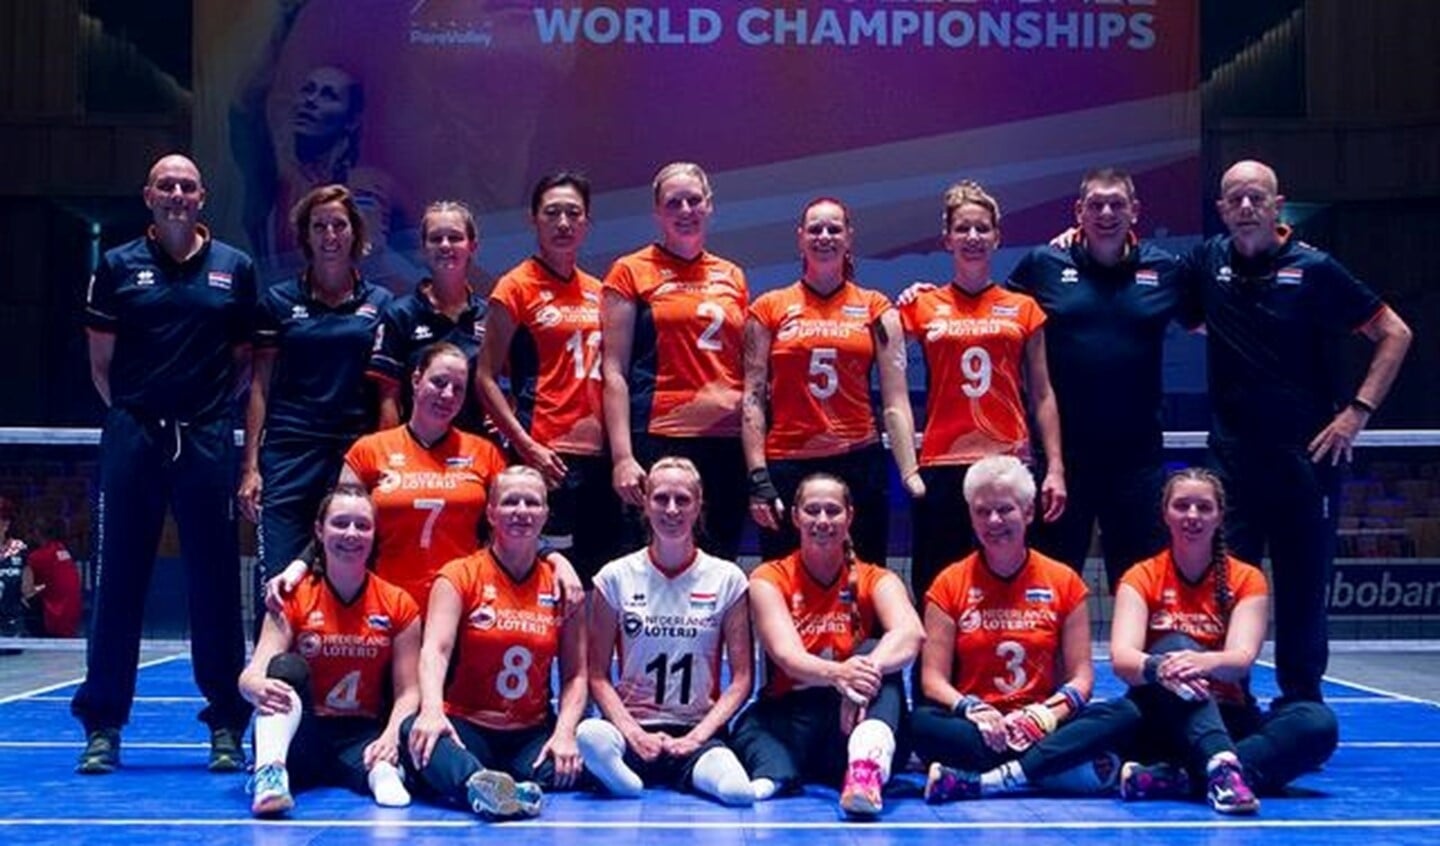 Het Nederlandse damesteam, Paula List zit op de onderste rij, derde van links (nummer 8).